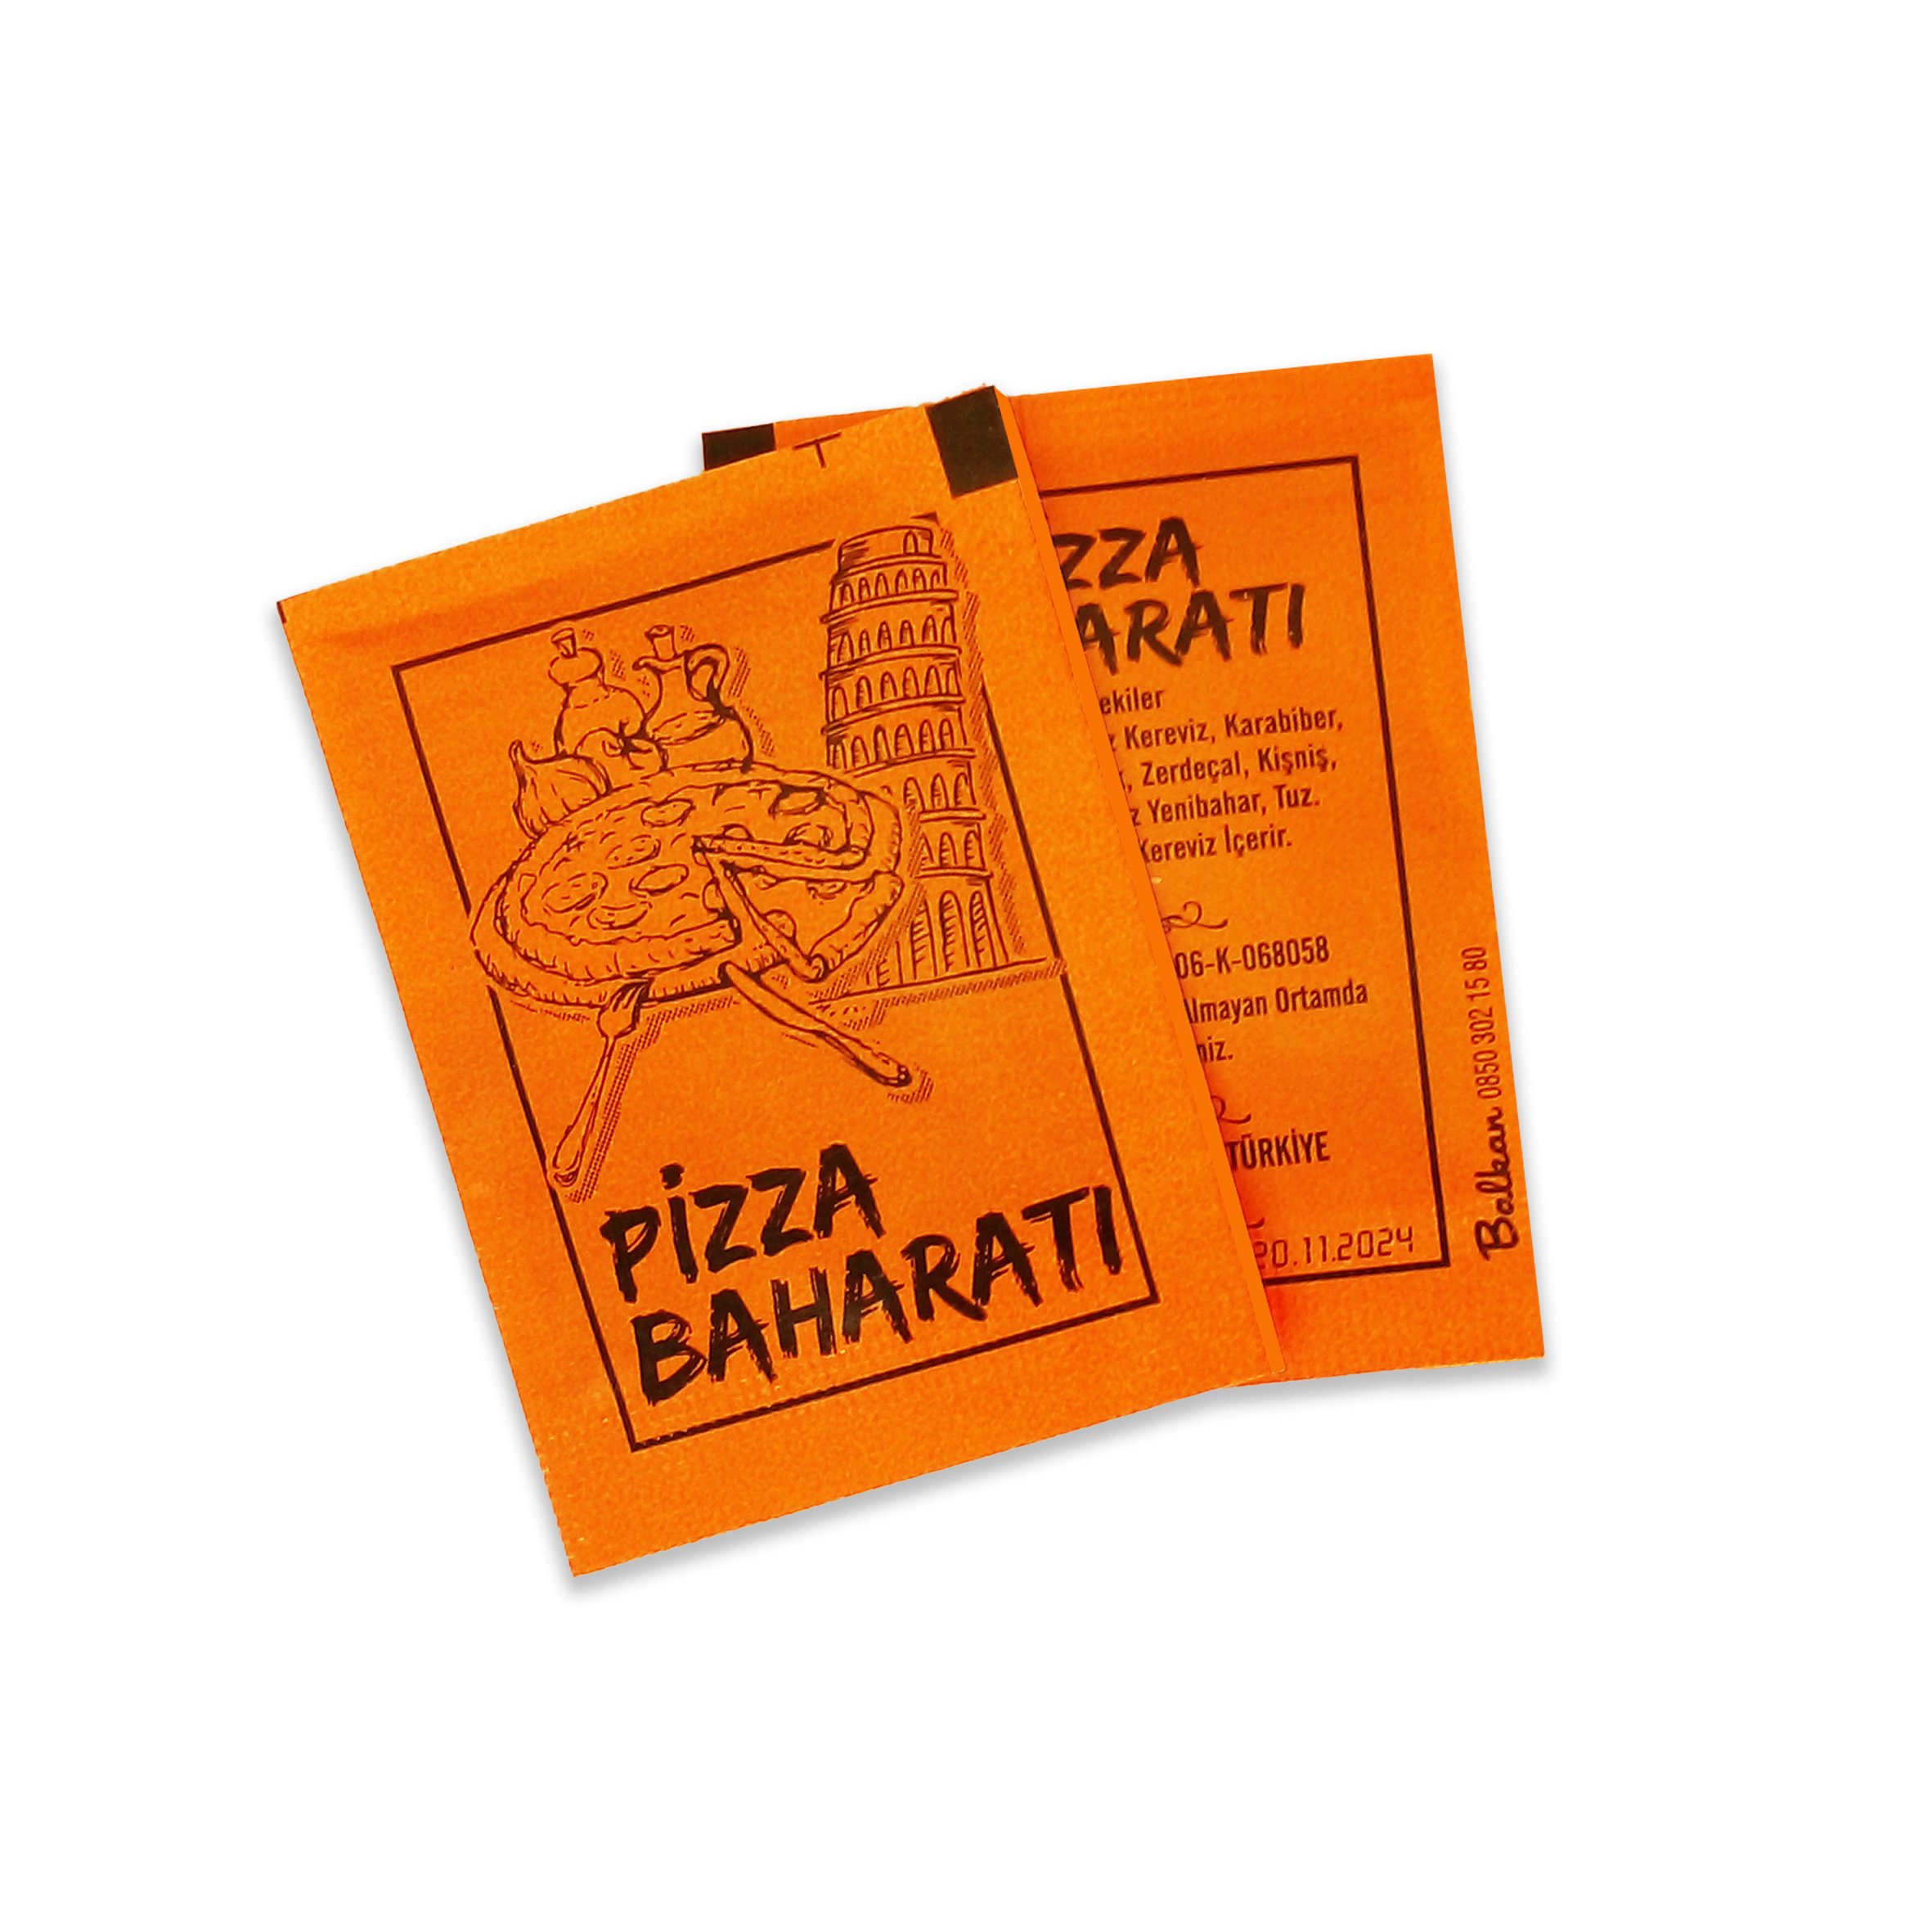 Pizza baharatı hakkında aklınıza takılanlar, pizza baharatı nedir, nasıl kullanılır, nerede kullanılır?  En ucuz pizza baharatı alımı